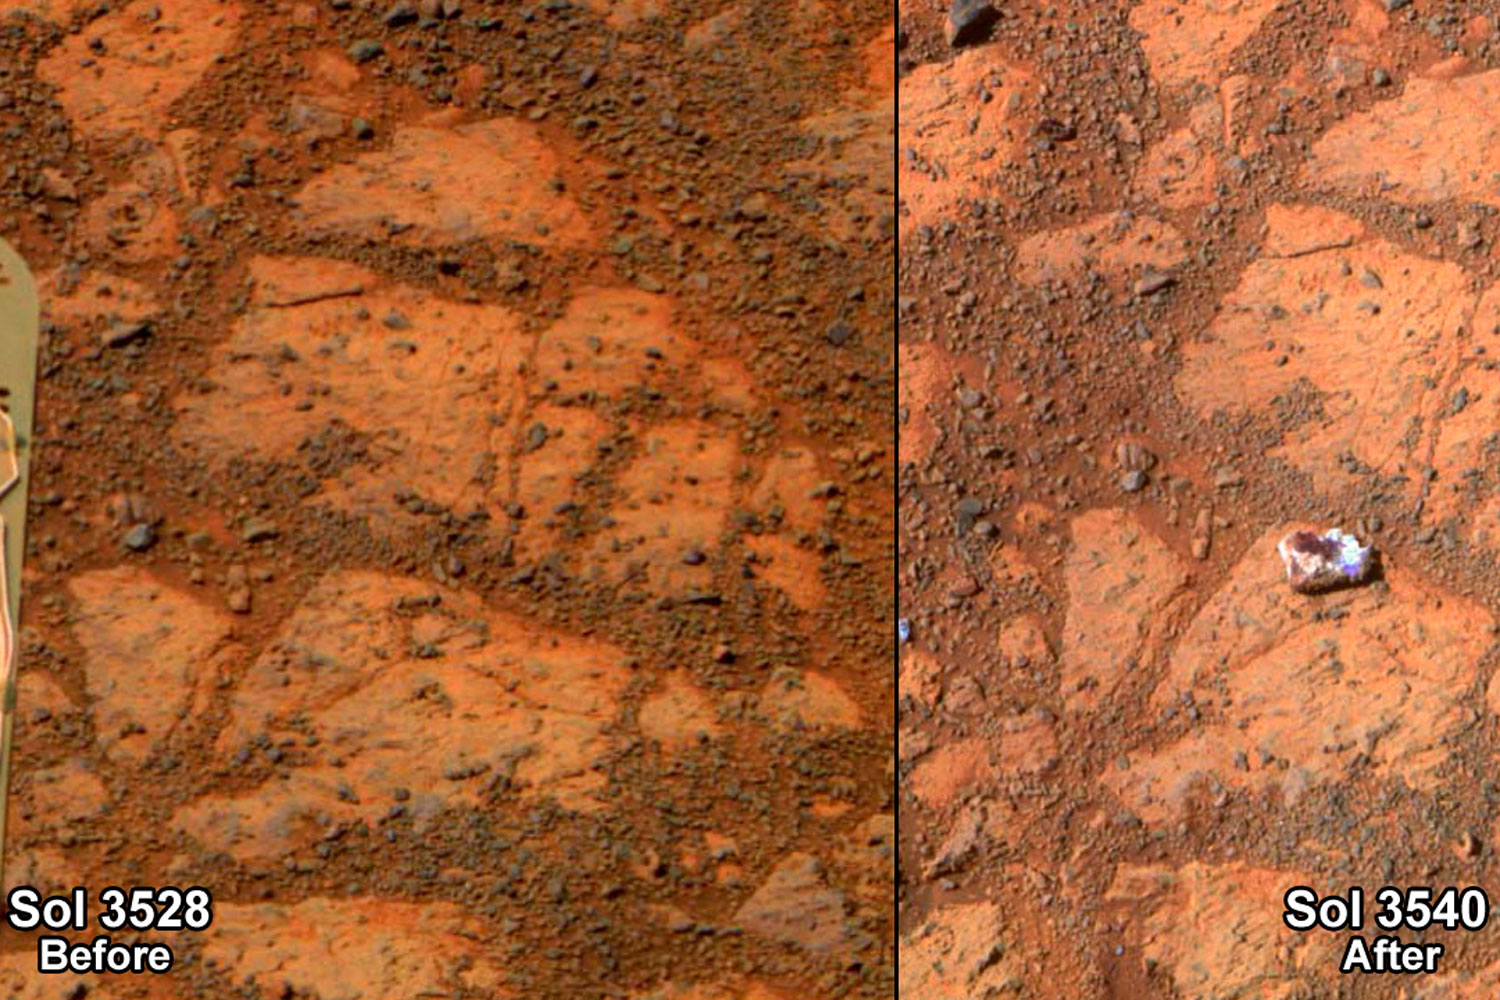 La aparición de una misteriosa roca delante del robot Opportunity sorprende a la NASA